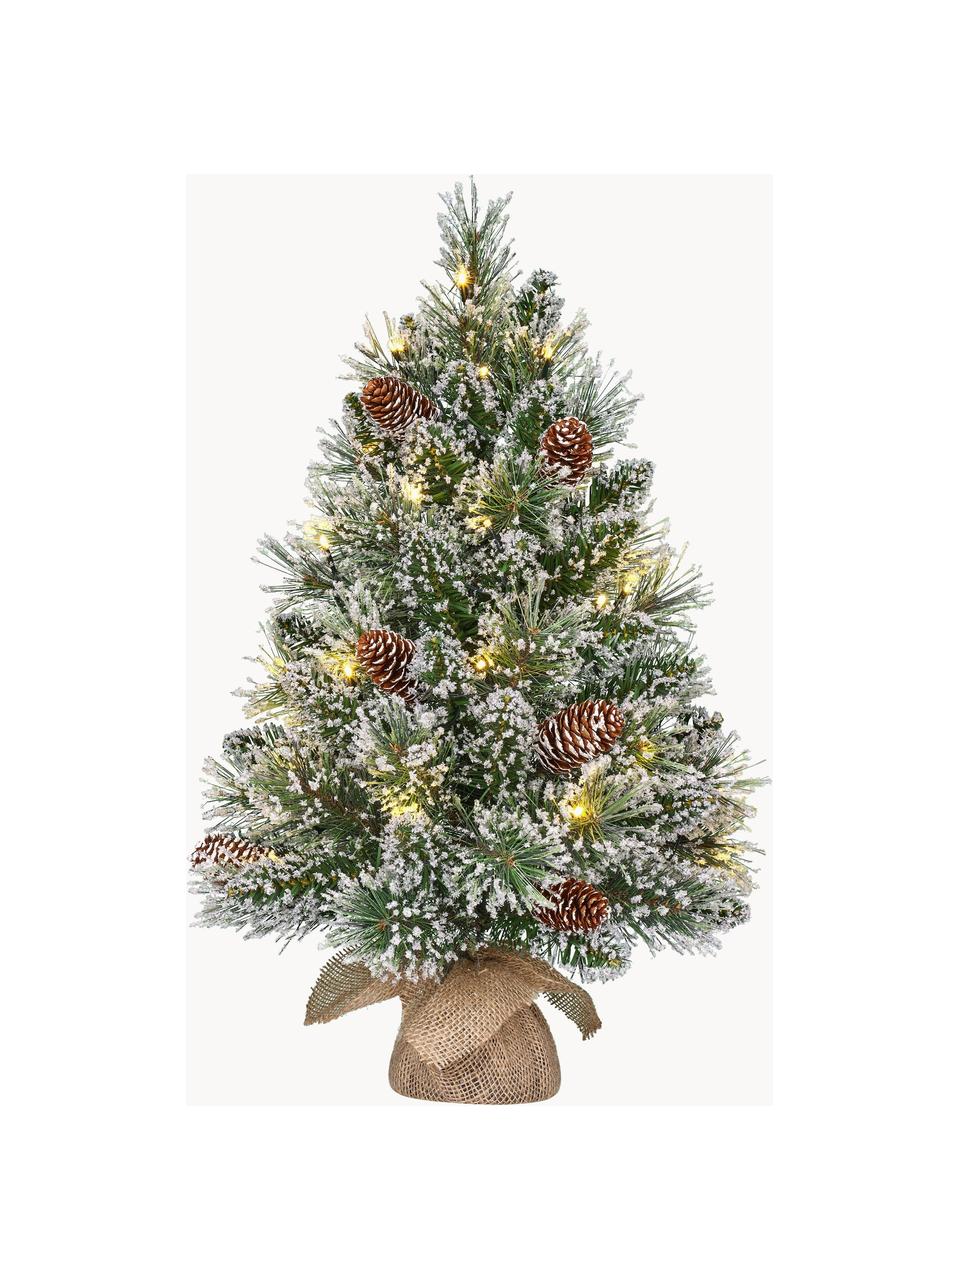 Umělý zasněžený vánoční LED stromeček Vandans, v různých velikostech, Umělá hmota, LED, Ø 36 cm, V 60 cm